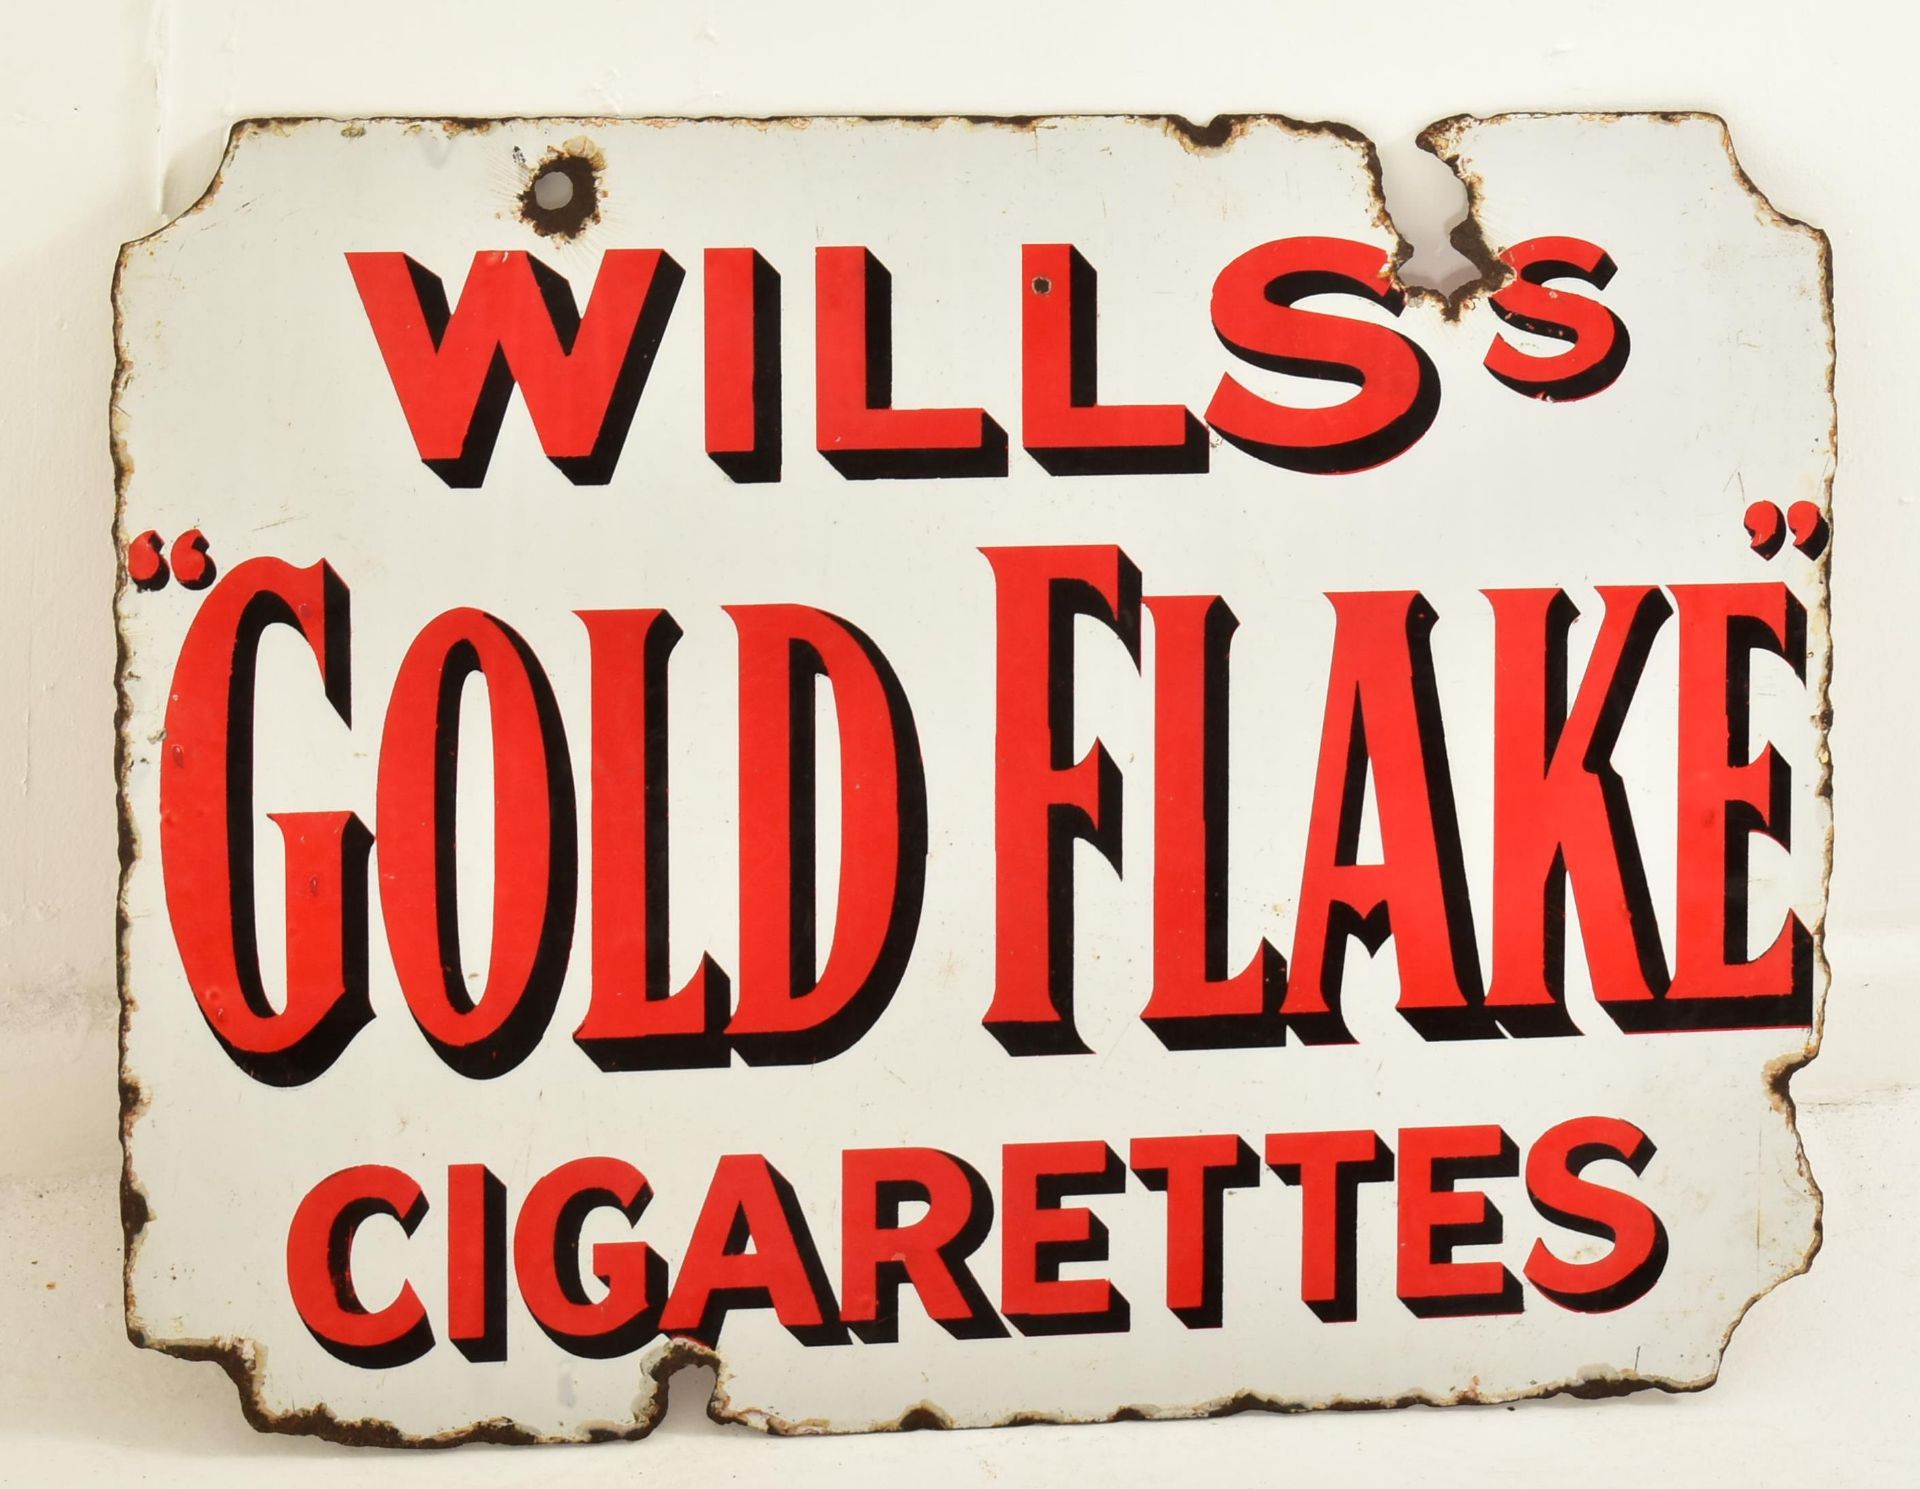 WILLS'S GOLD FLAKE - VINTAGE ENAMEL ADVERTISING SIGN